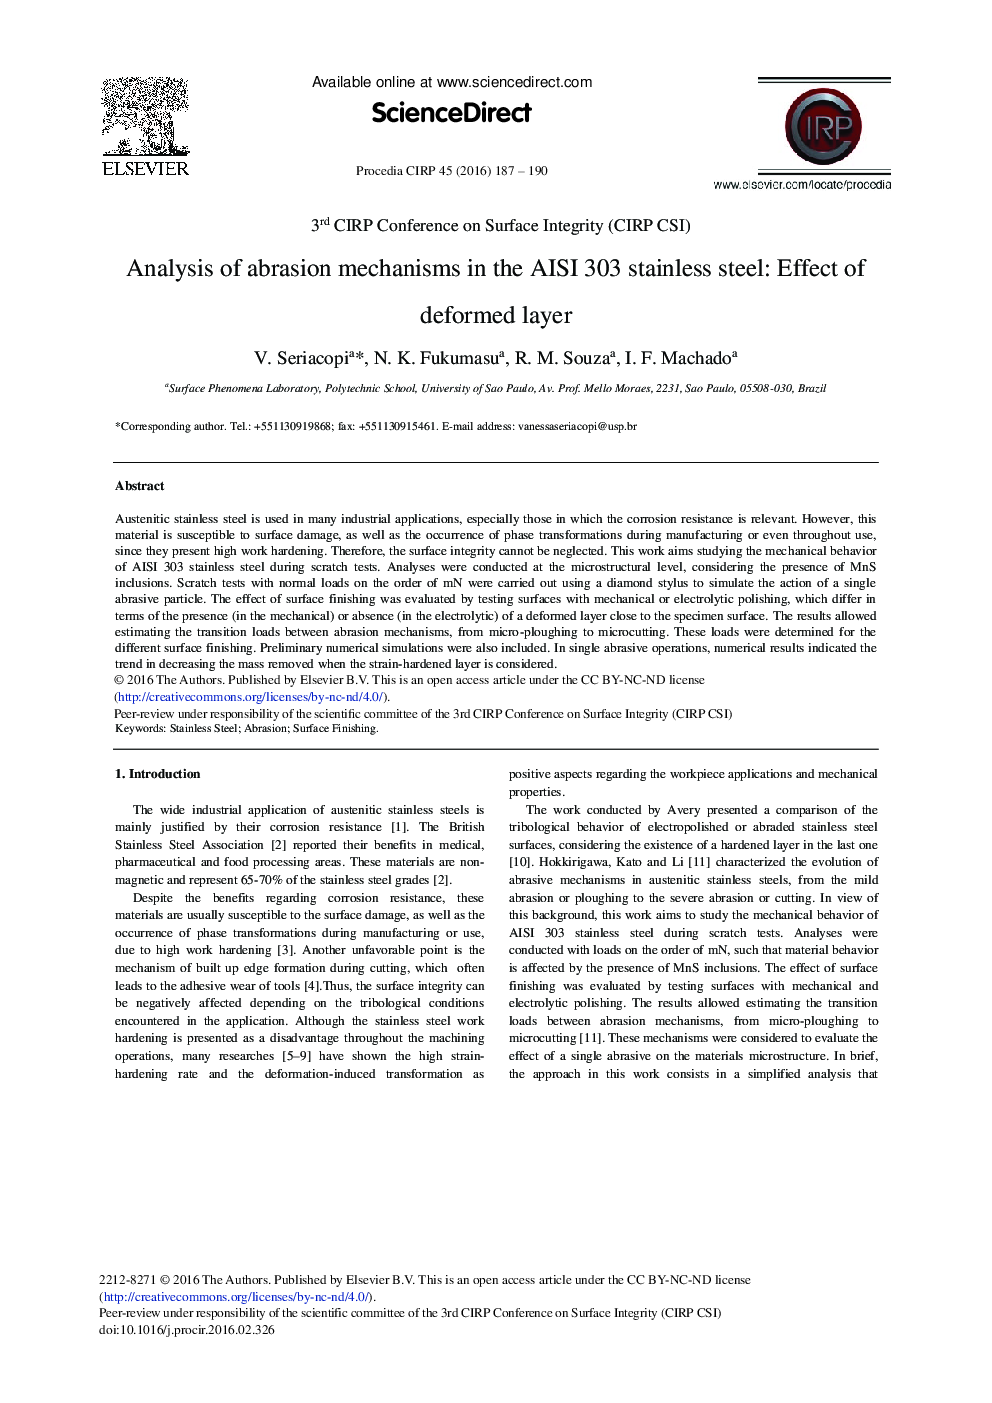 تجزیه و تحلیل مکانیسم های سایش در فولاد ضد زنگ AISI 303: اثر لایه های نازک ☆